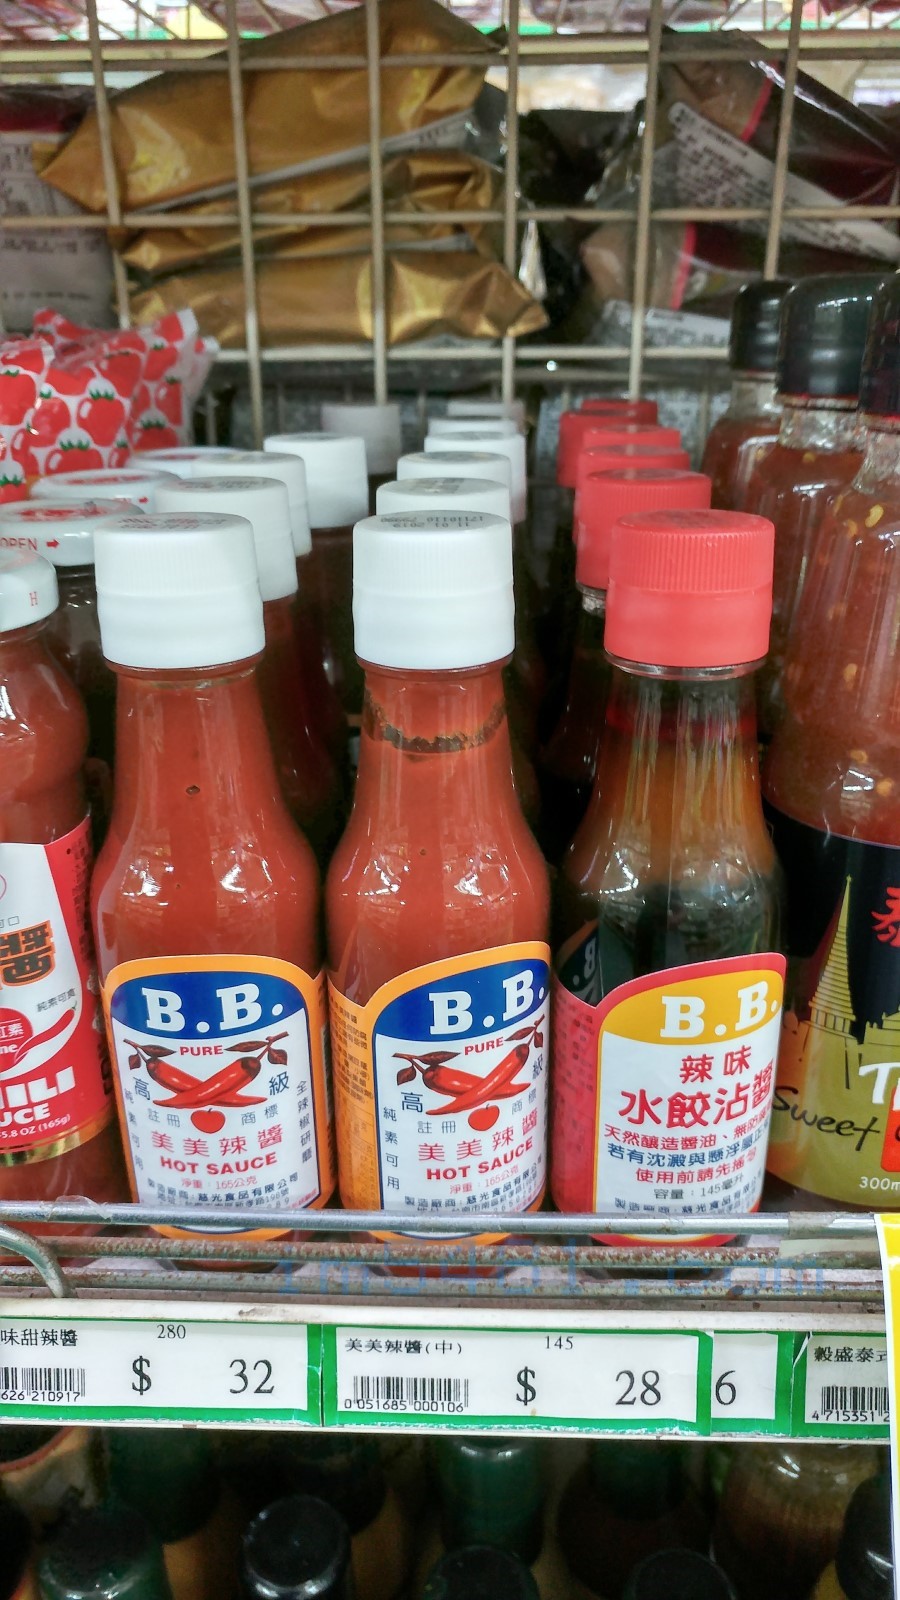 2017年版的BB水餃沾醬台南市農會超市拍攝